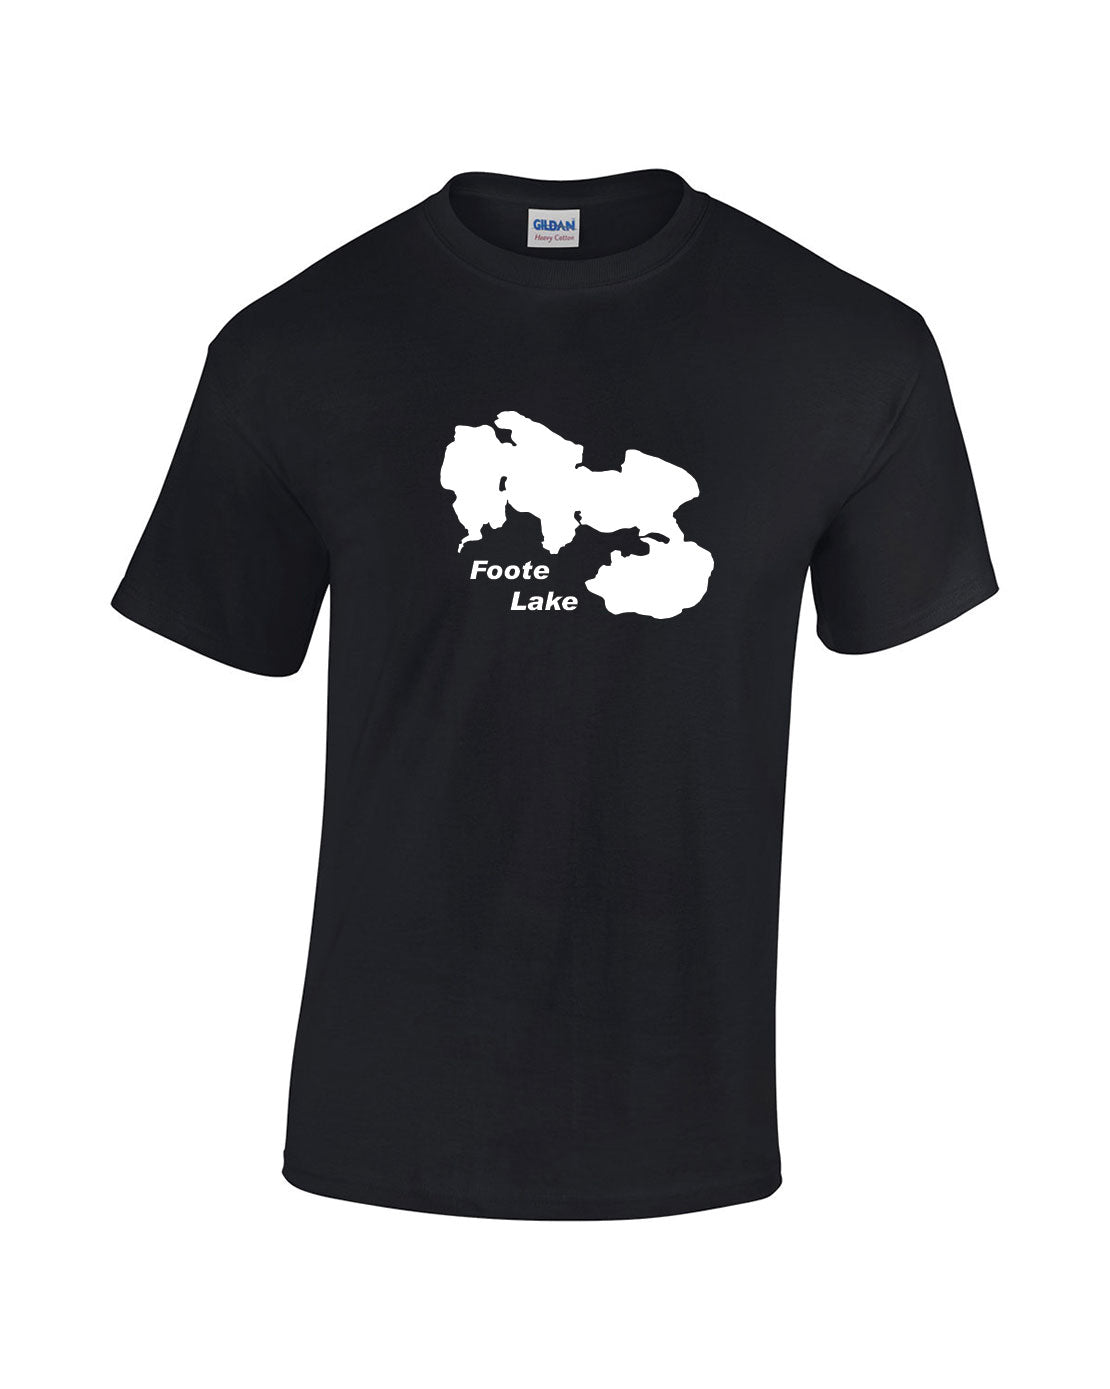 Foote Lake T-Shirt